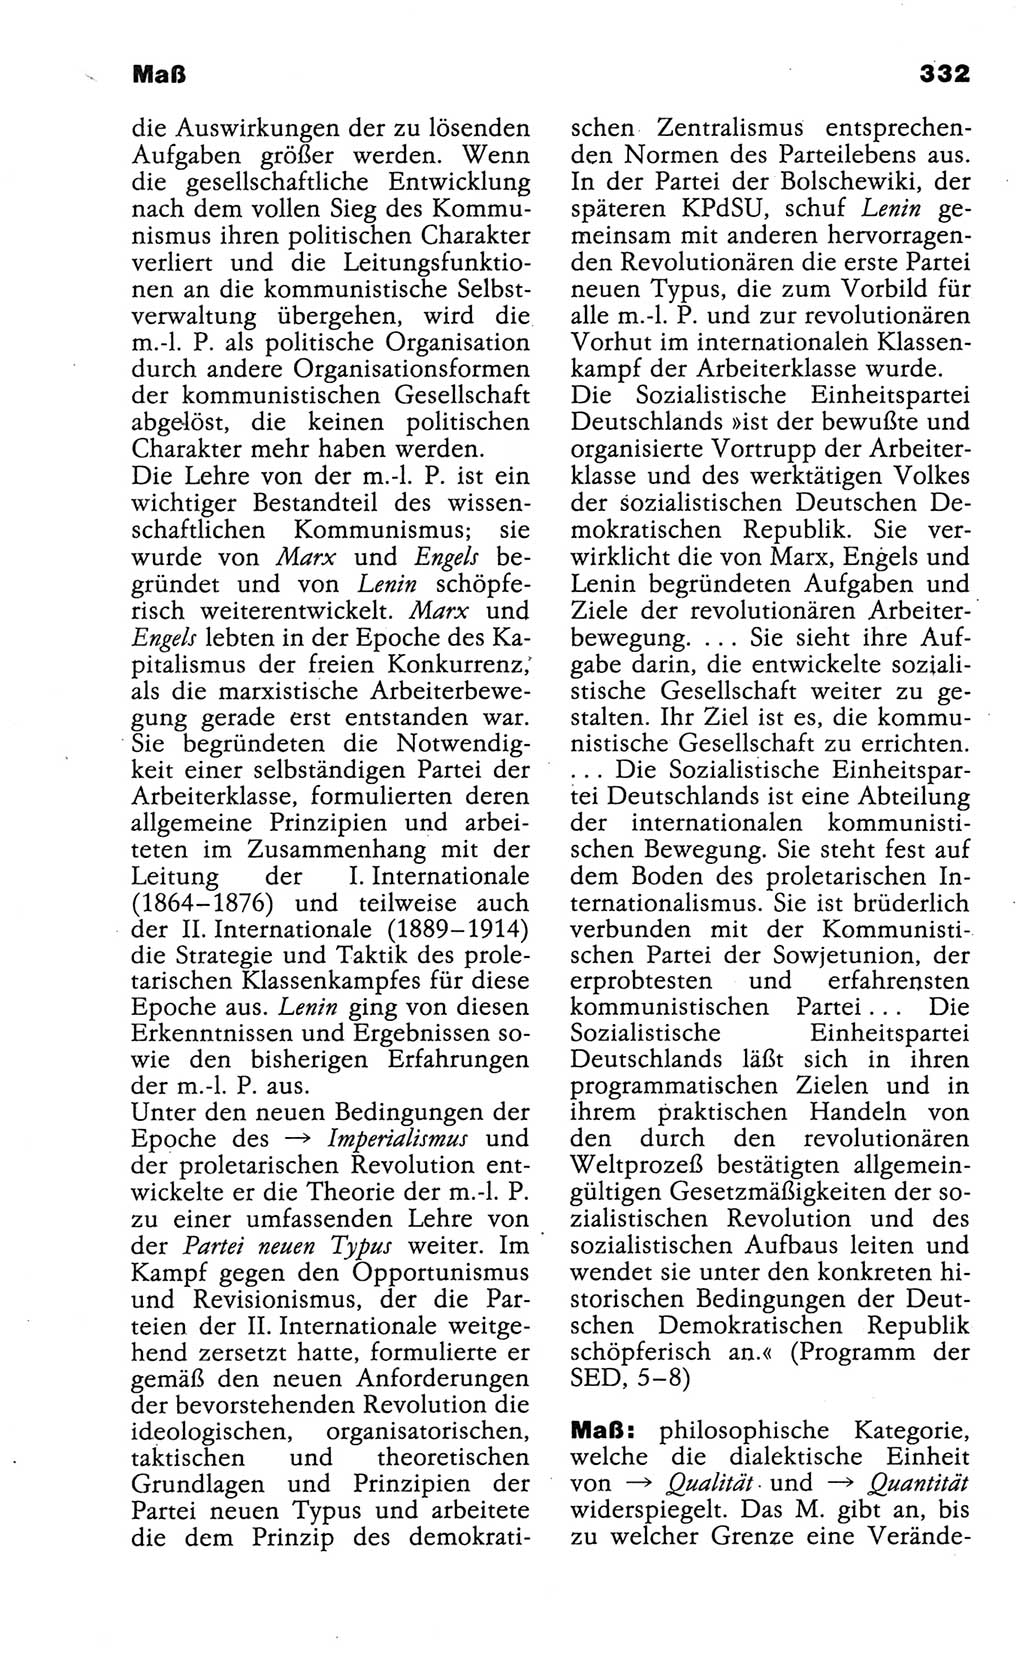 Wörterbuch der marxistisch-leninistischen Philosophie [Deutsche Demokratische Republik (DDR)] 1986, Seite 332 (Wb. ML Phil. DDR 1986, S. 332)